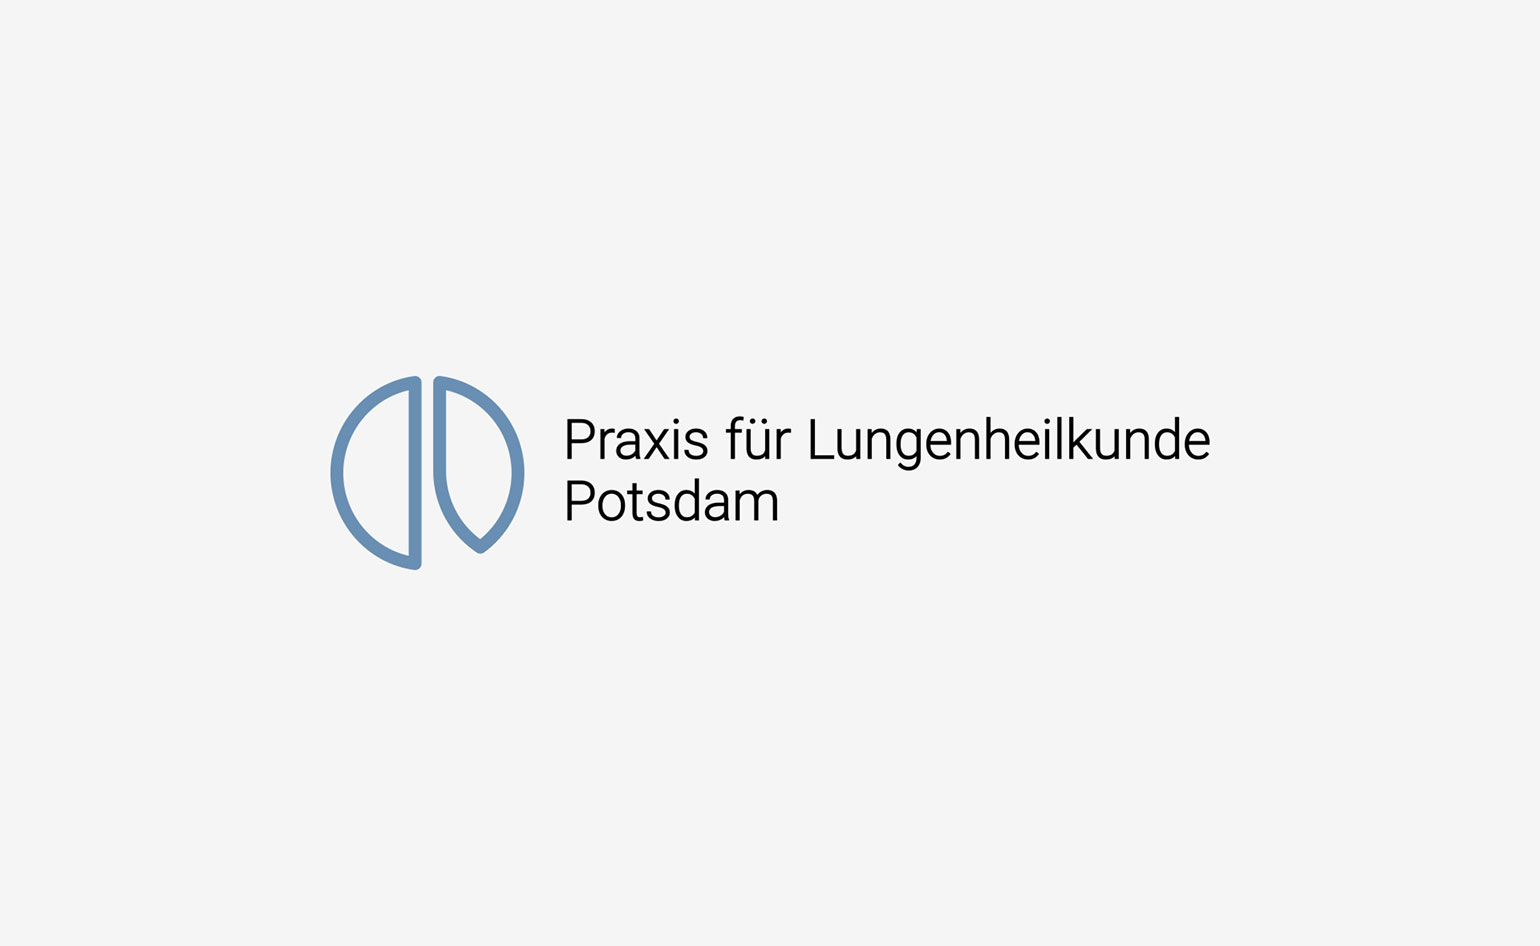 Praxis für Lungenheilkunde Potsdam Logo